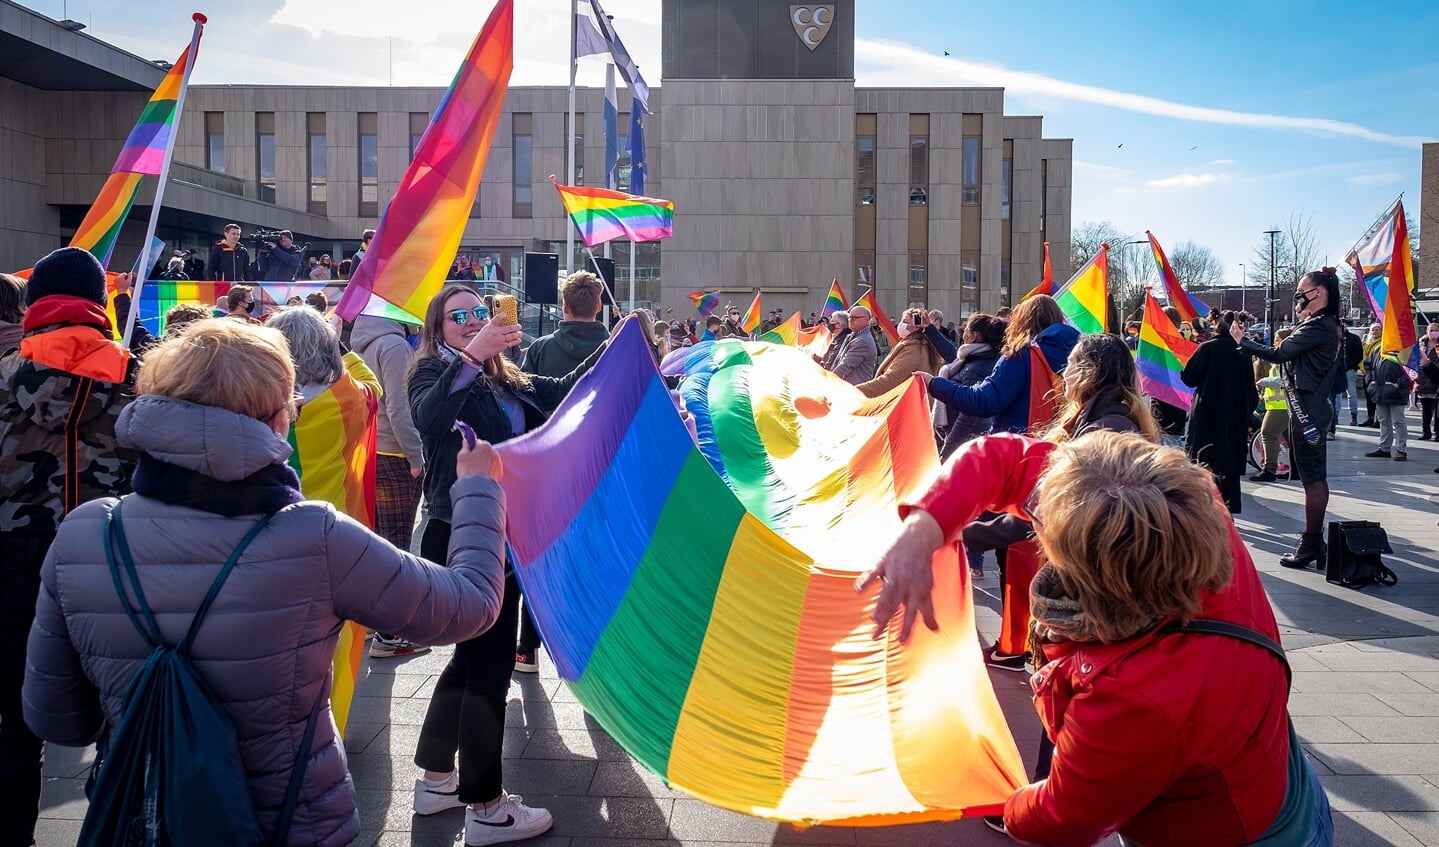 • Demonstranten wapperden met regenboogvlaggen tijdens de demonstratie.